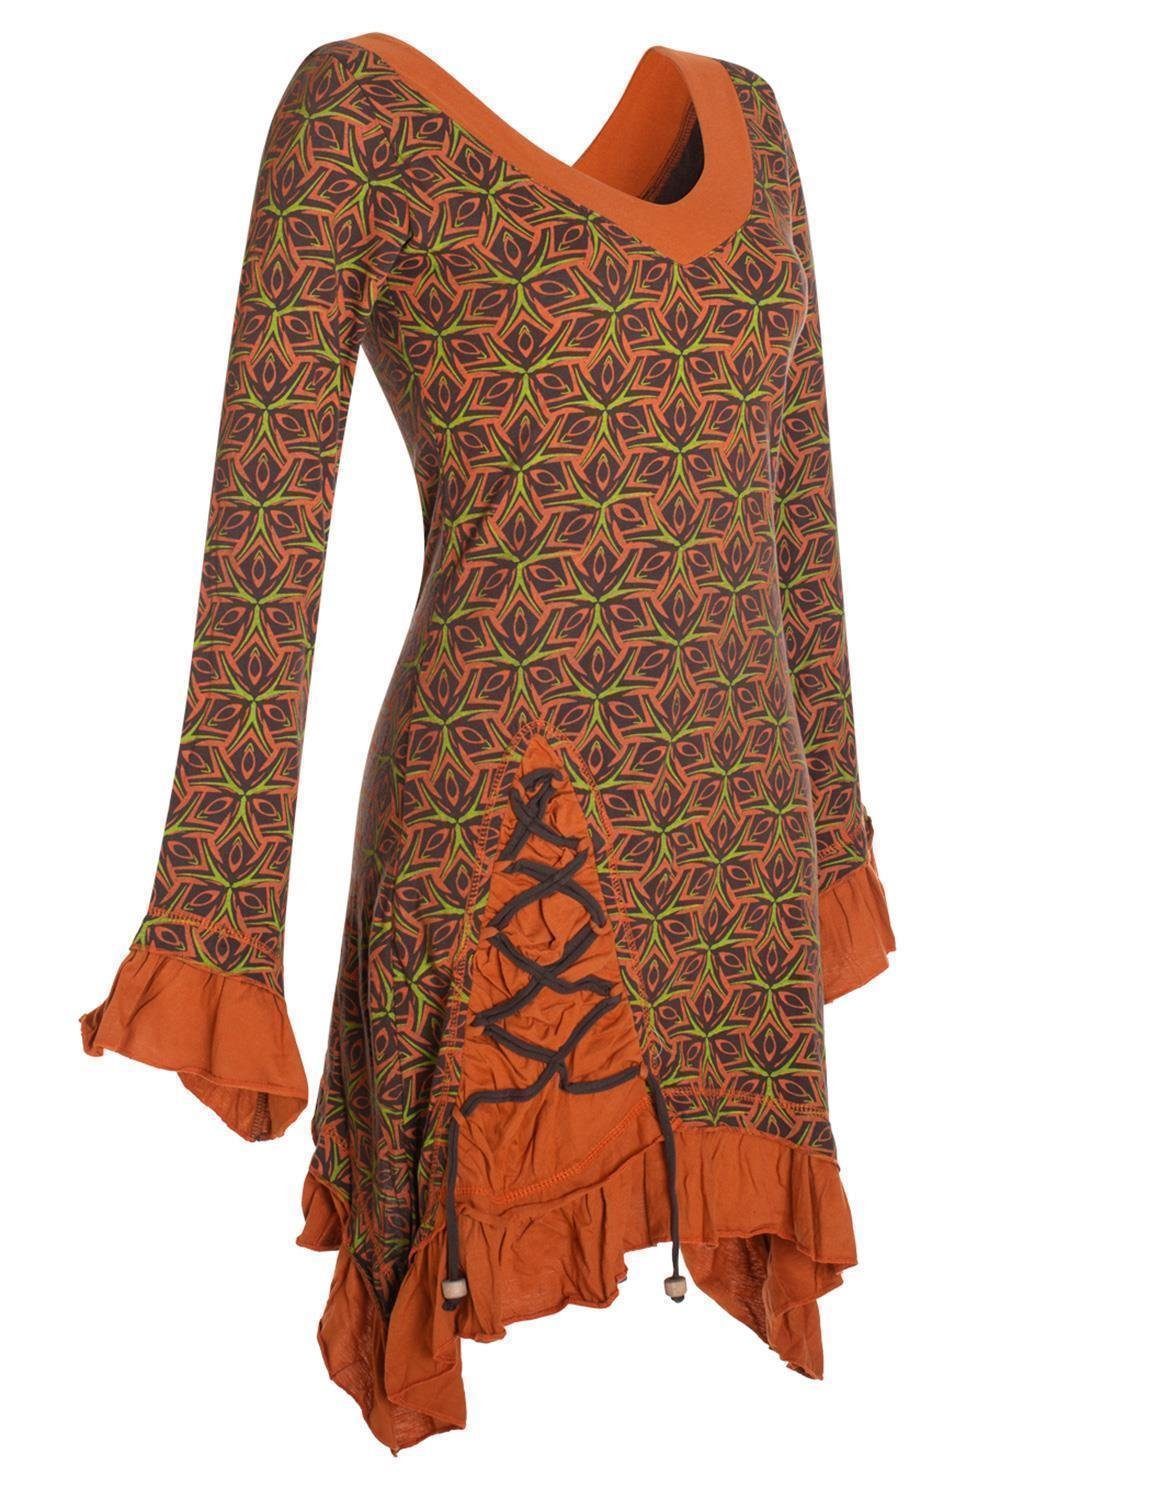 Bedruckt Festkleid Langarm Asymmetrisch Volant Elfen, Kleid Zipfelkleid Vishes braun Hippie, Rüschen